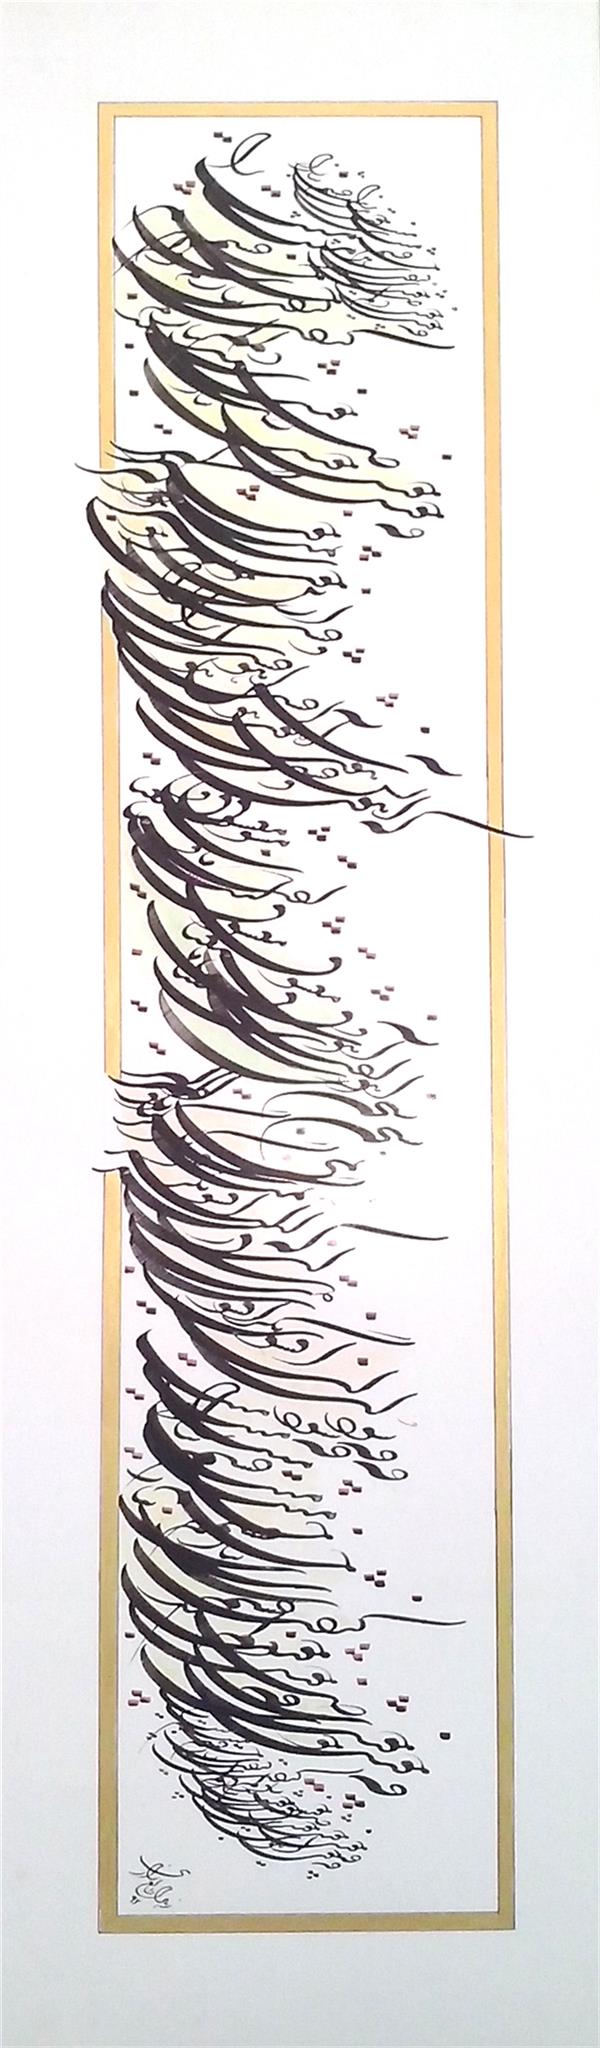 هنر خوشنویسی اشعار حافظ zahra talezari #فروخته_شد #ابعاد اثر: 40 در 90
قلم نی و آب رنگ